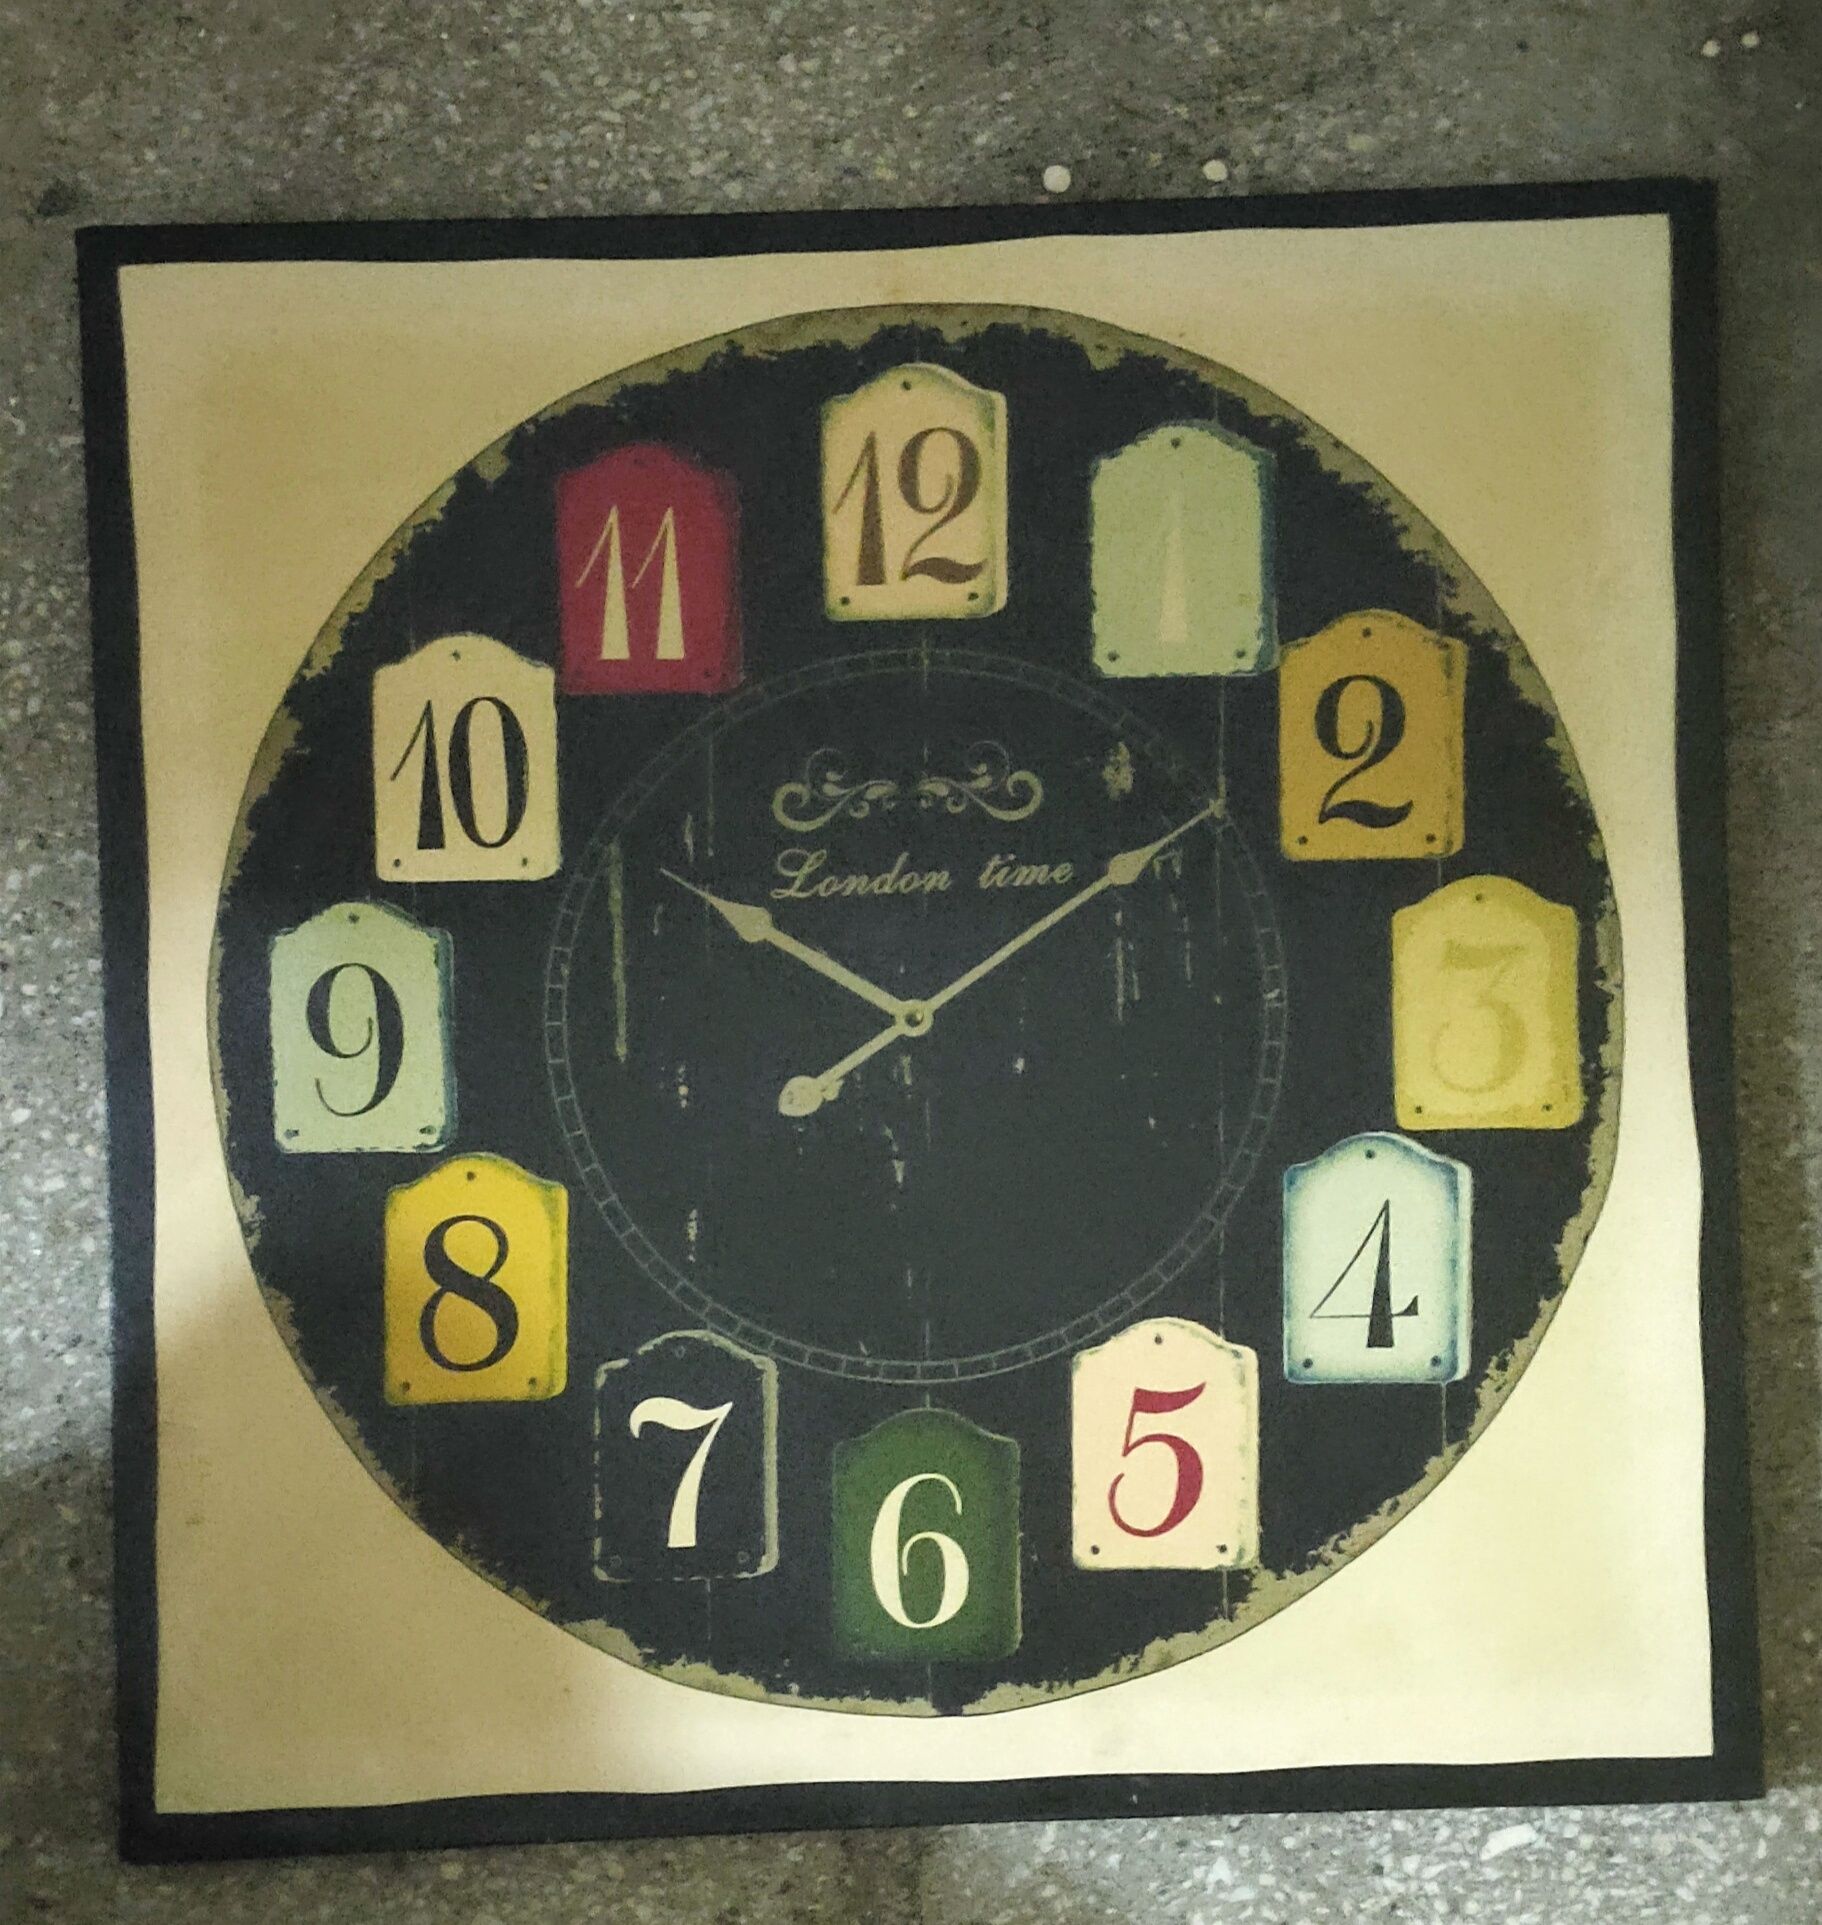 London time obrazek drukowany przedstawiający zegar